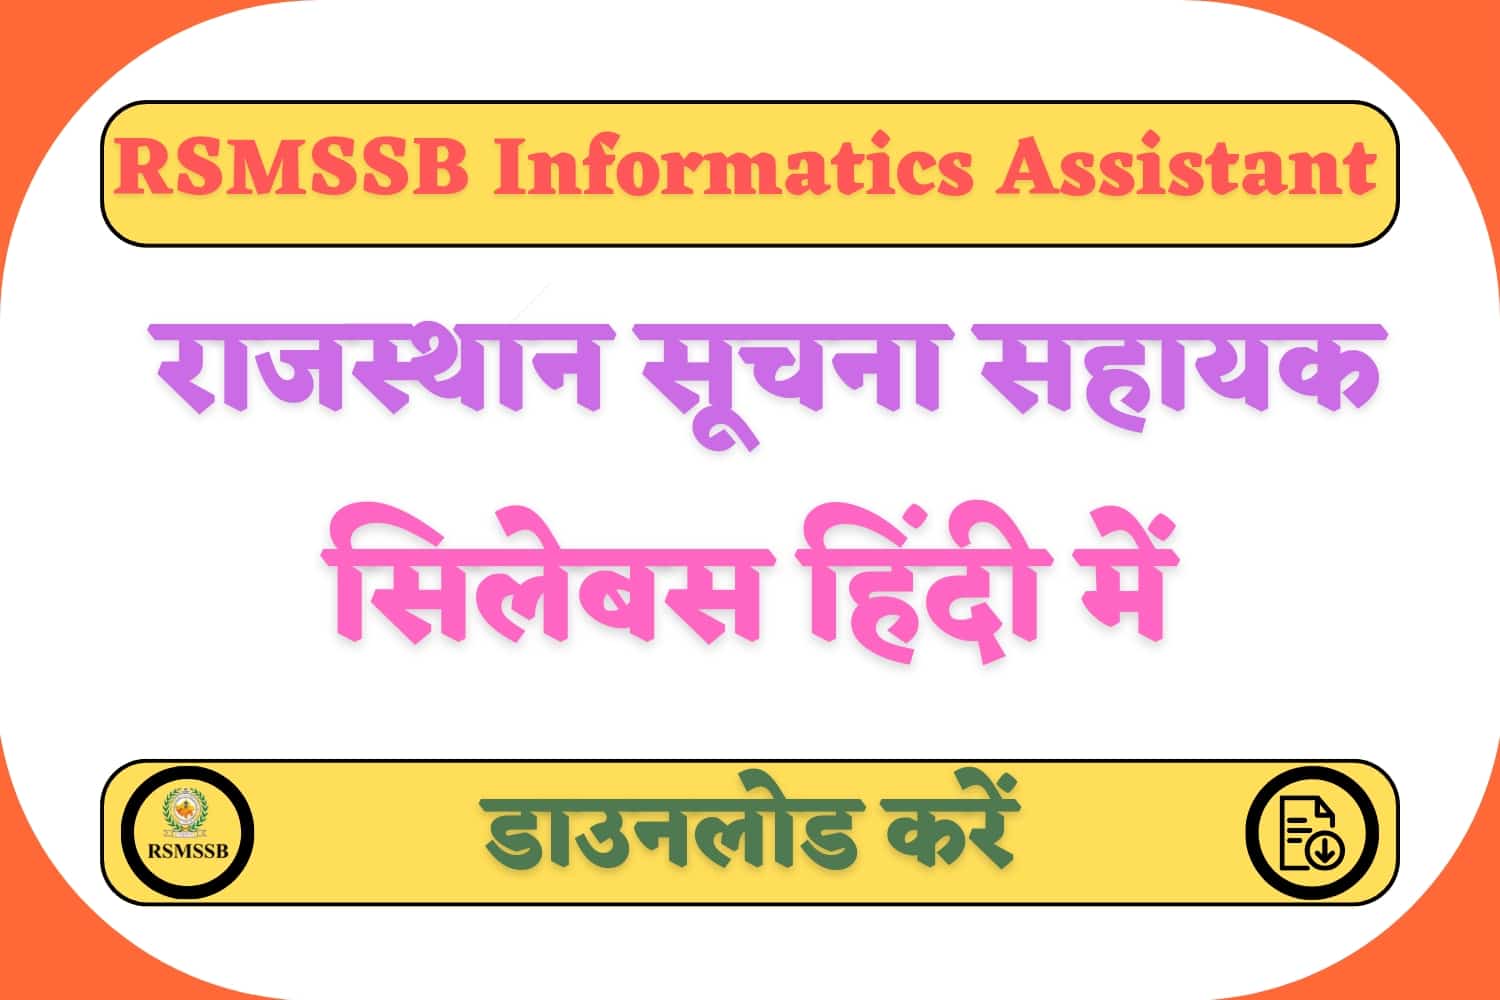 RSMSSB Informatics Assistant Syllabus 2023 In Hindi | राजस्थान सूचना सहायक सिलेबस हिंदी में